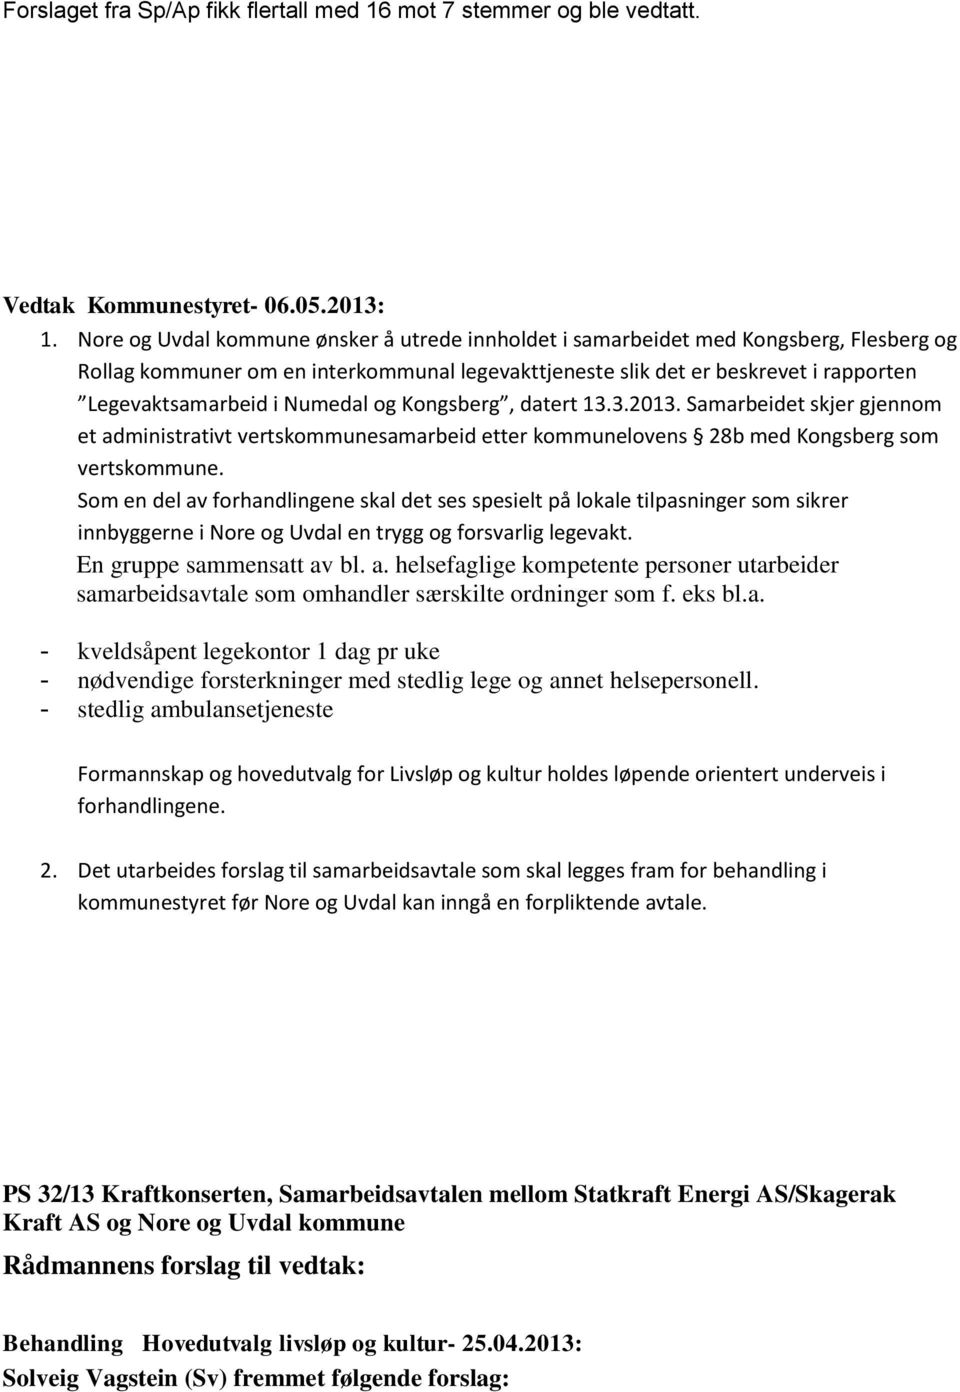 Numedal og Kongsberg, datert 13.3.2013. Samarbeidet skjer gjennom et administrativt vertskommunesamarbeid etter kommunelovens 28b med Kongsberg som vertskommune.